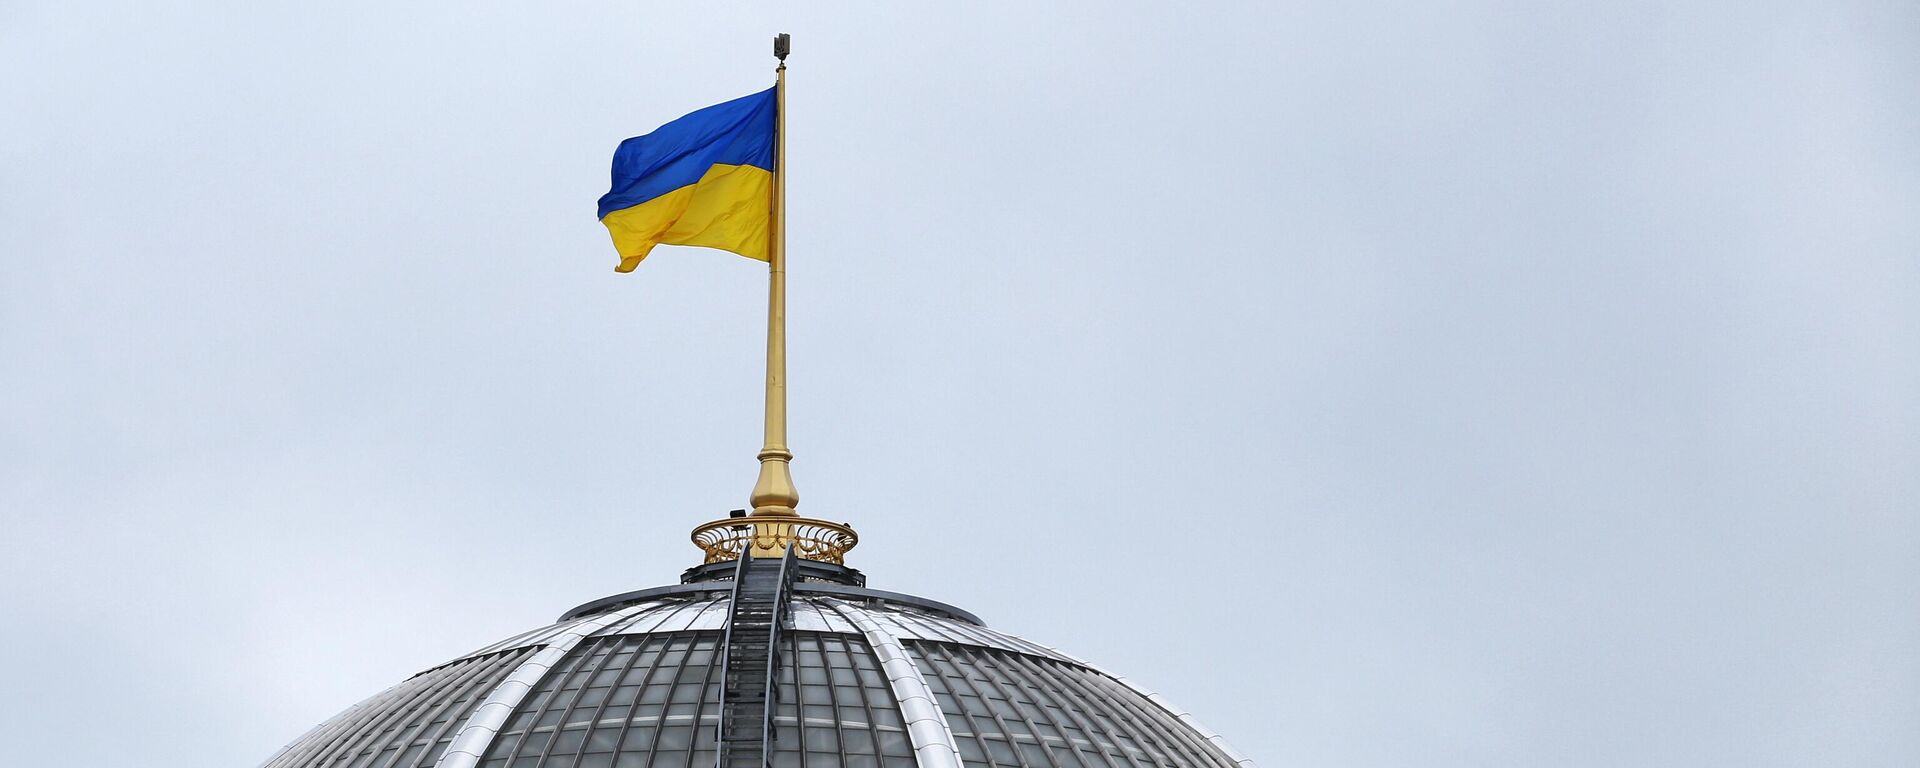 Государственный флаг Украины на здании Верховной рады в Киеве - Sputnik Латвия, 1920, 16.12.2021